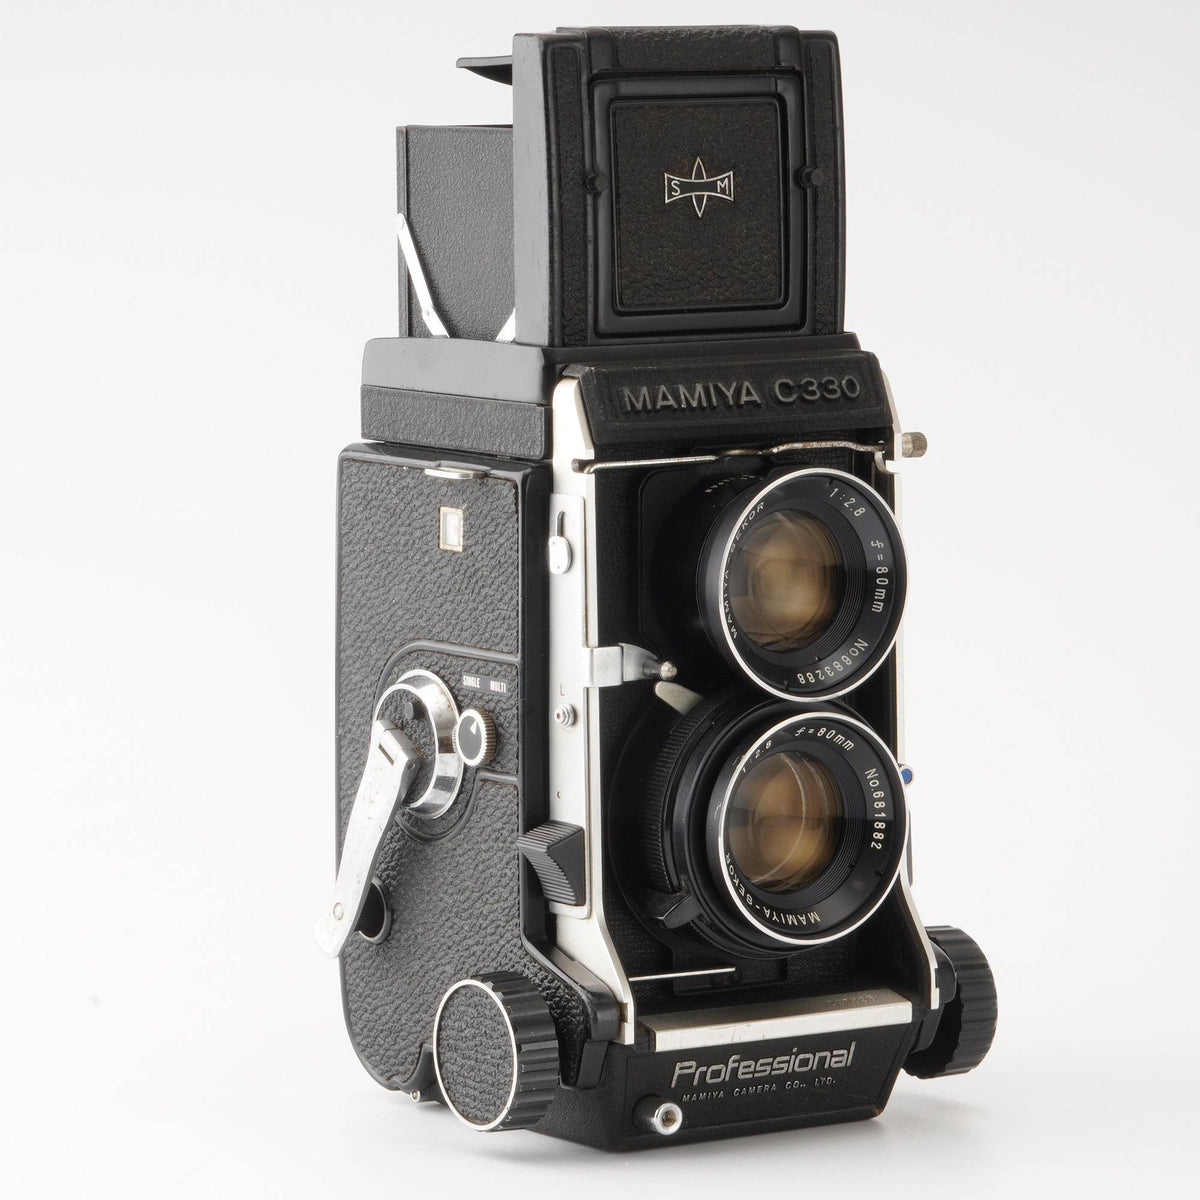 MamiyaC330プロフェッショナル＋レンズ55mm,80mm,180mm - フィルムカメラ